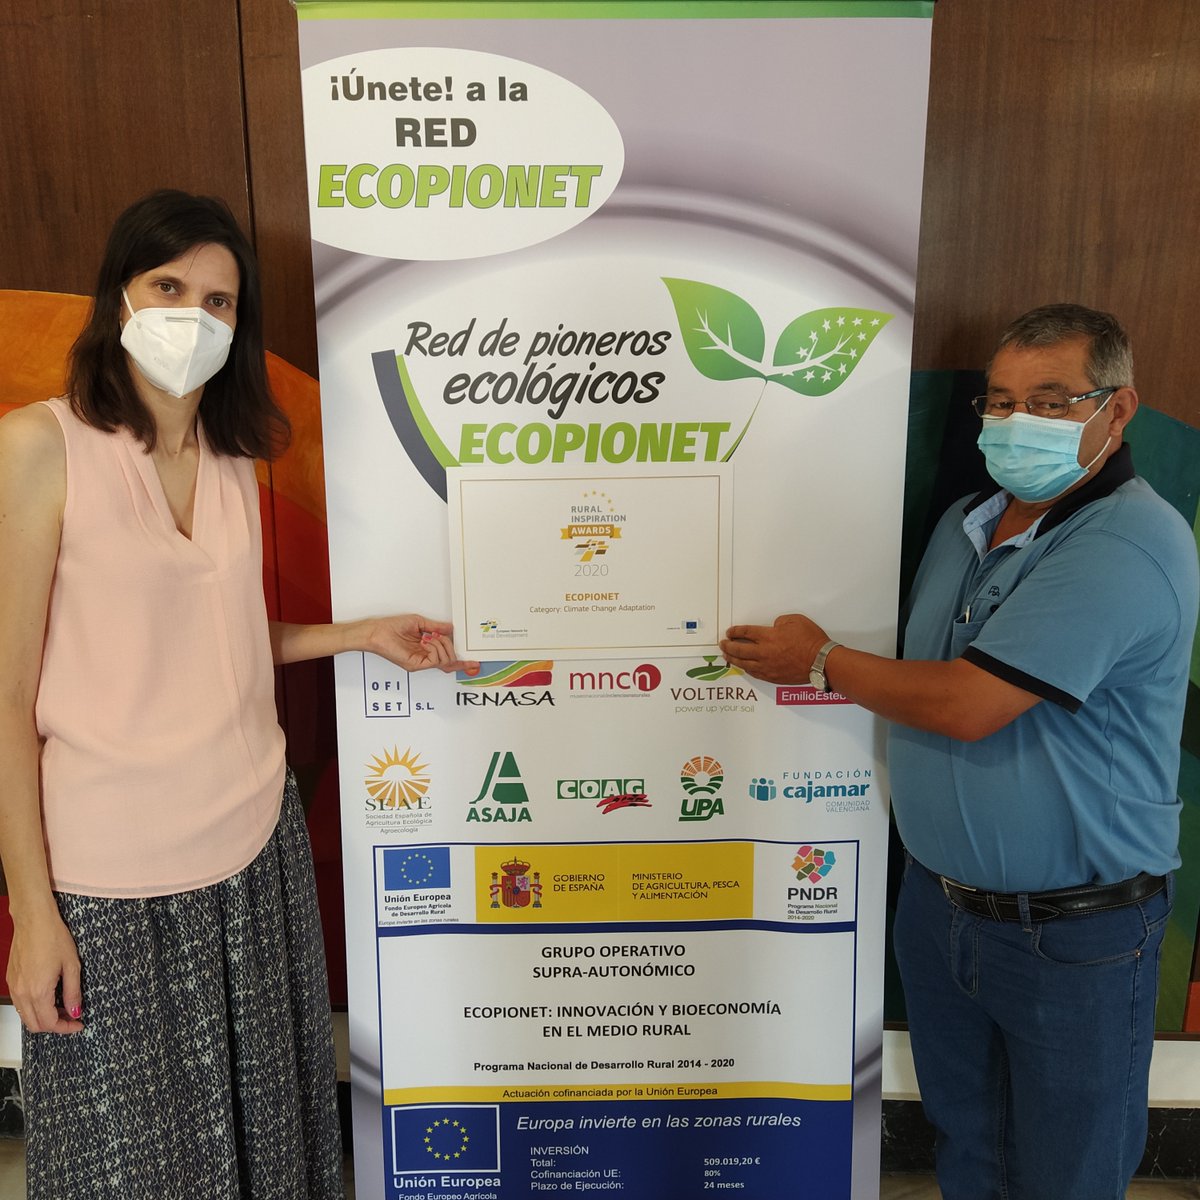 🌱Redes y #agriculturaecológica: @ecopionet ha creado una red de agricultores pioneros en ecológico para compartir sus conocimientos. 🏆 Segundo premio del voto popular en los #RIA2020. ¿Quieres saber más? ➡️ bit.ly/3am6z9S